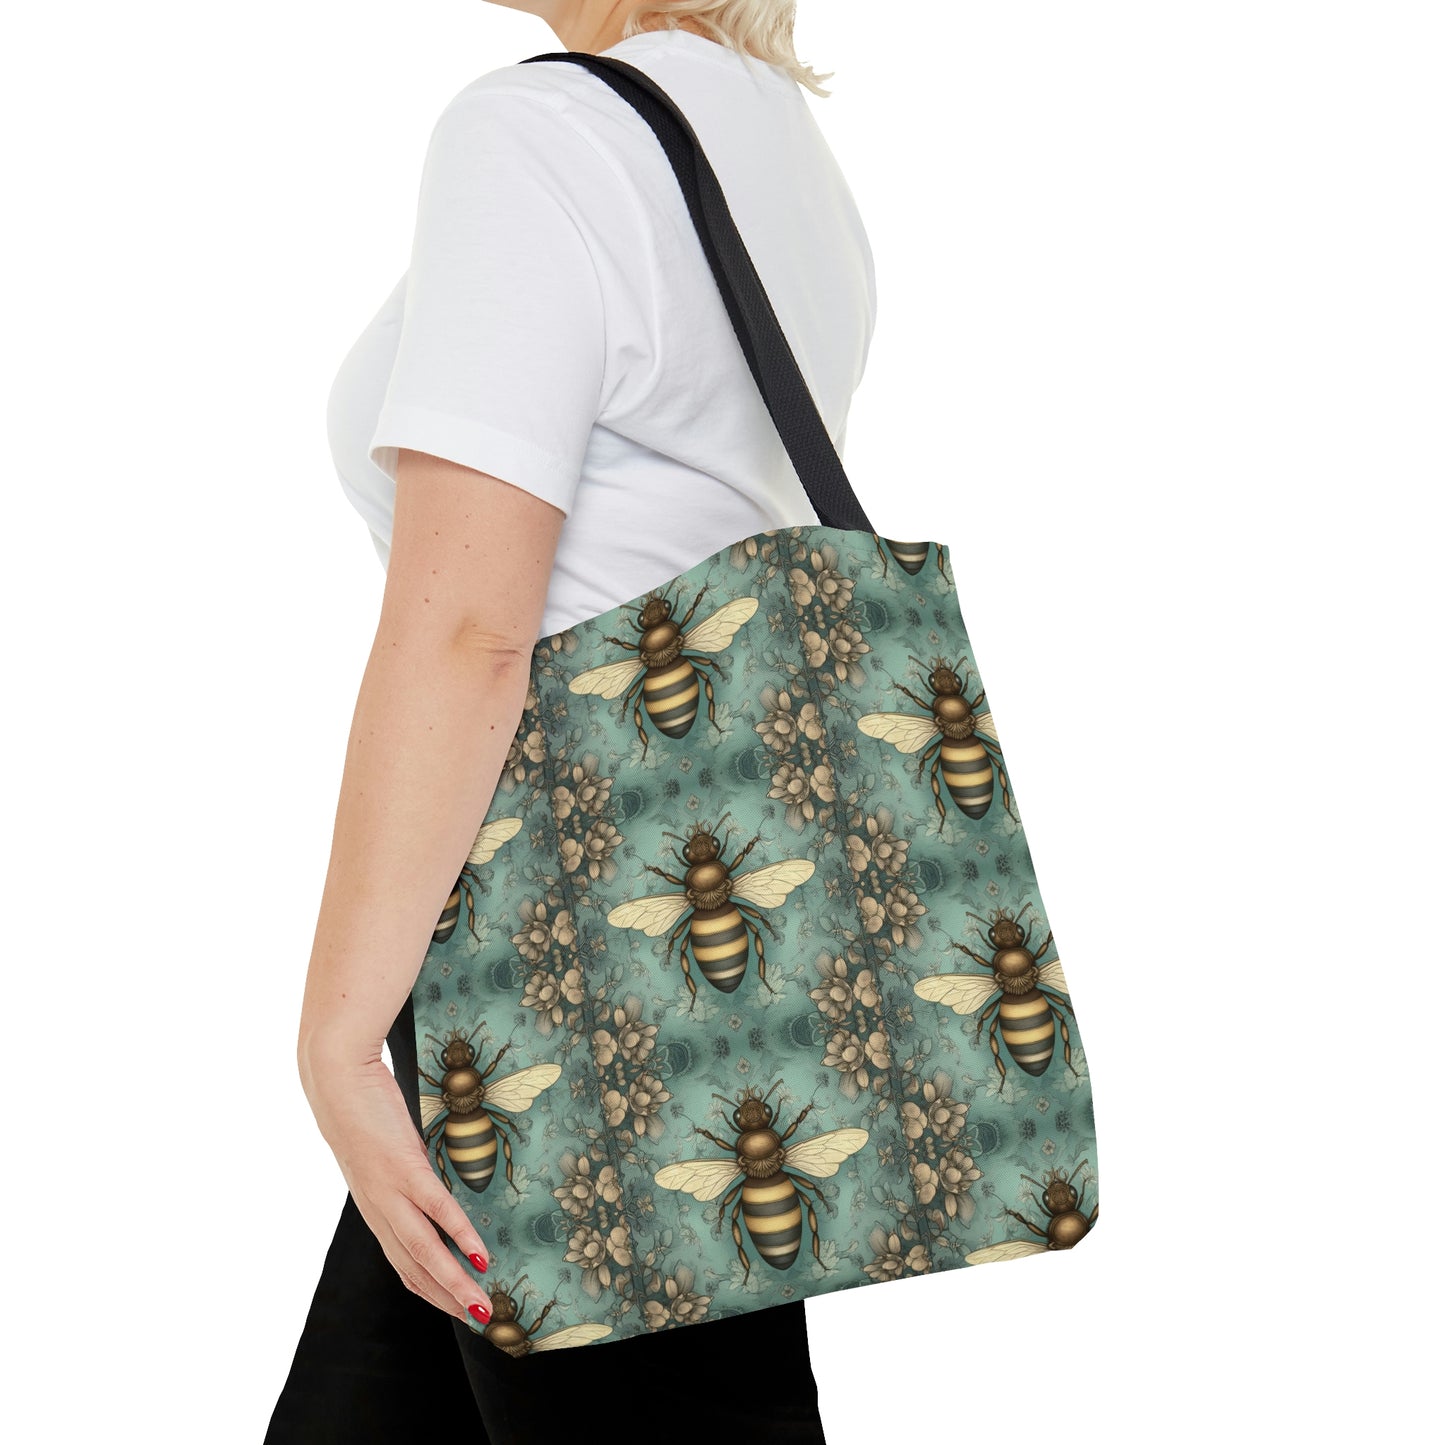 Teal Honey Bee Tote Bag